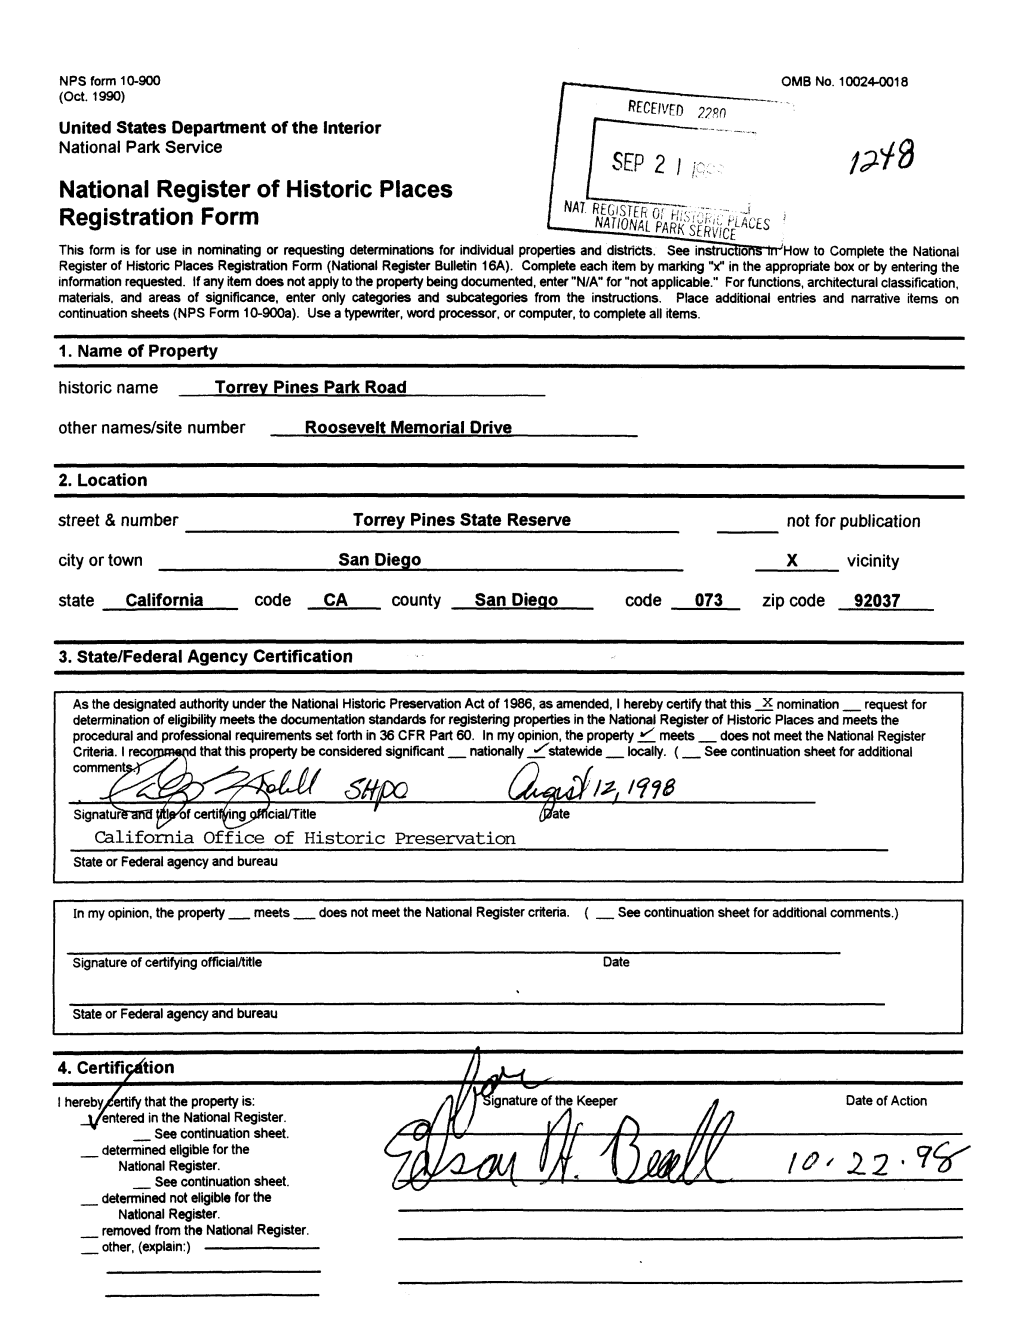 National Register of Historic Places Registration Form SEP 2